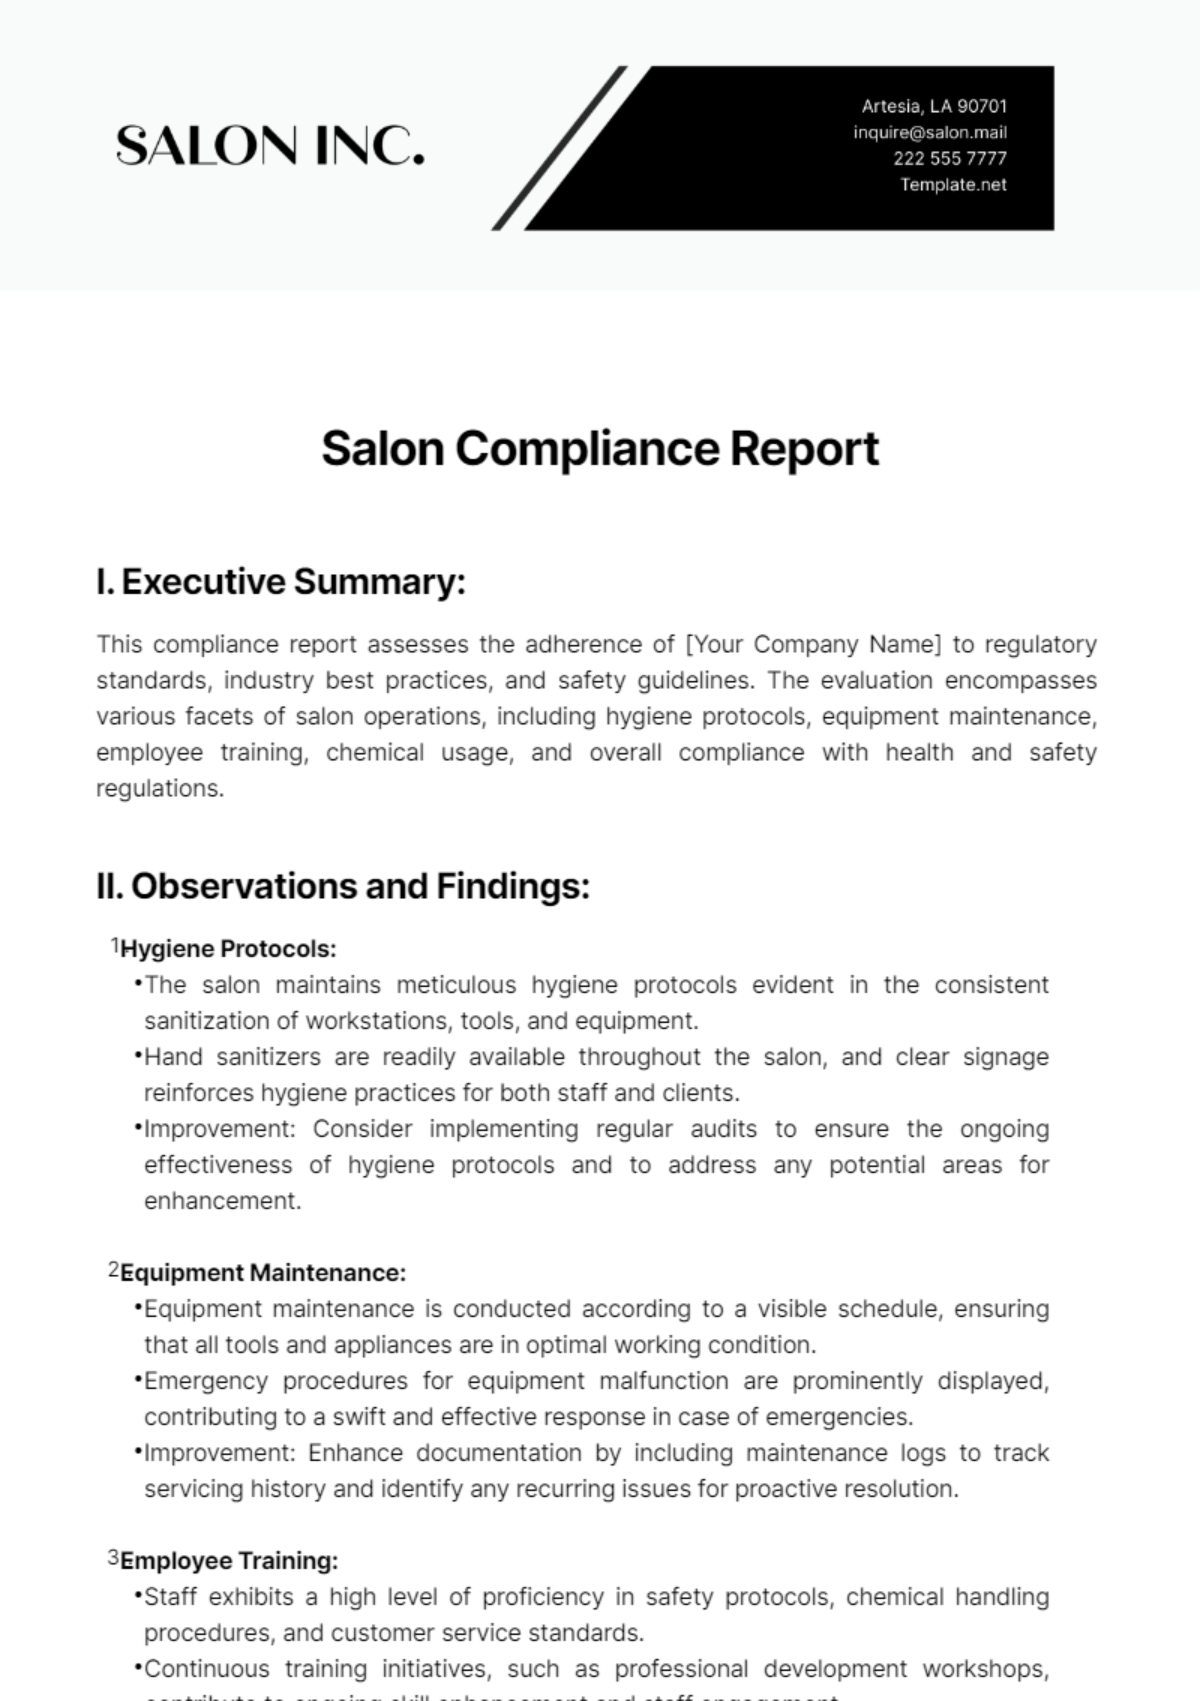 Salon Compliance Report Template